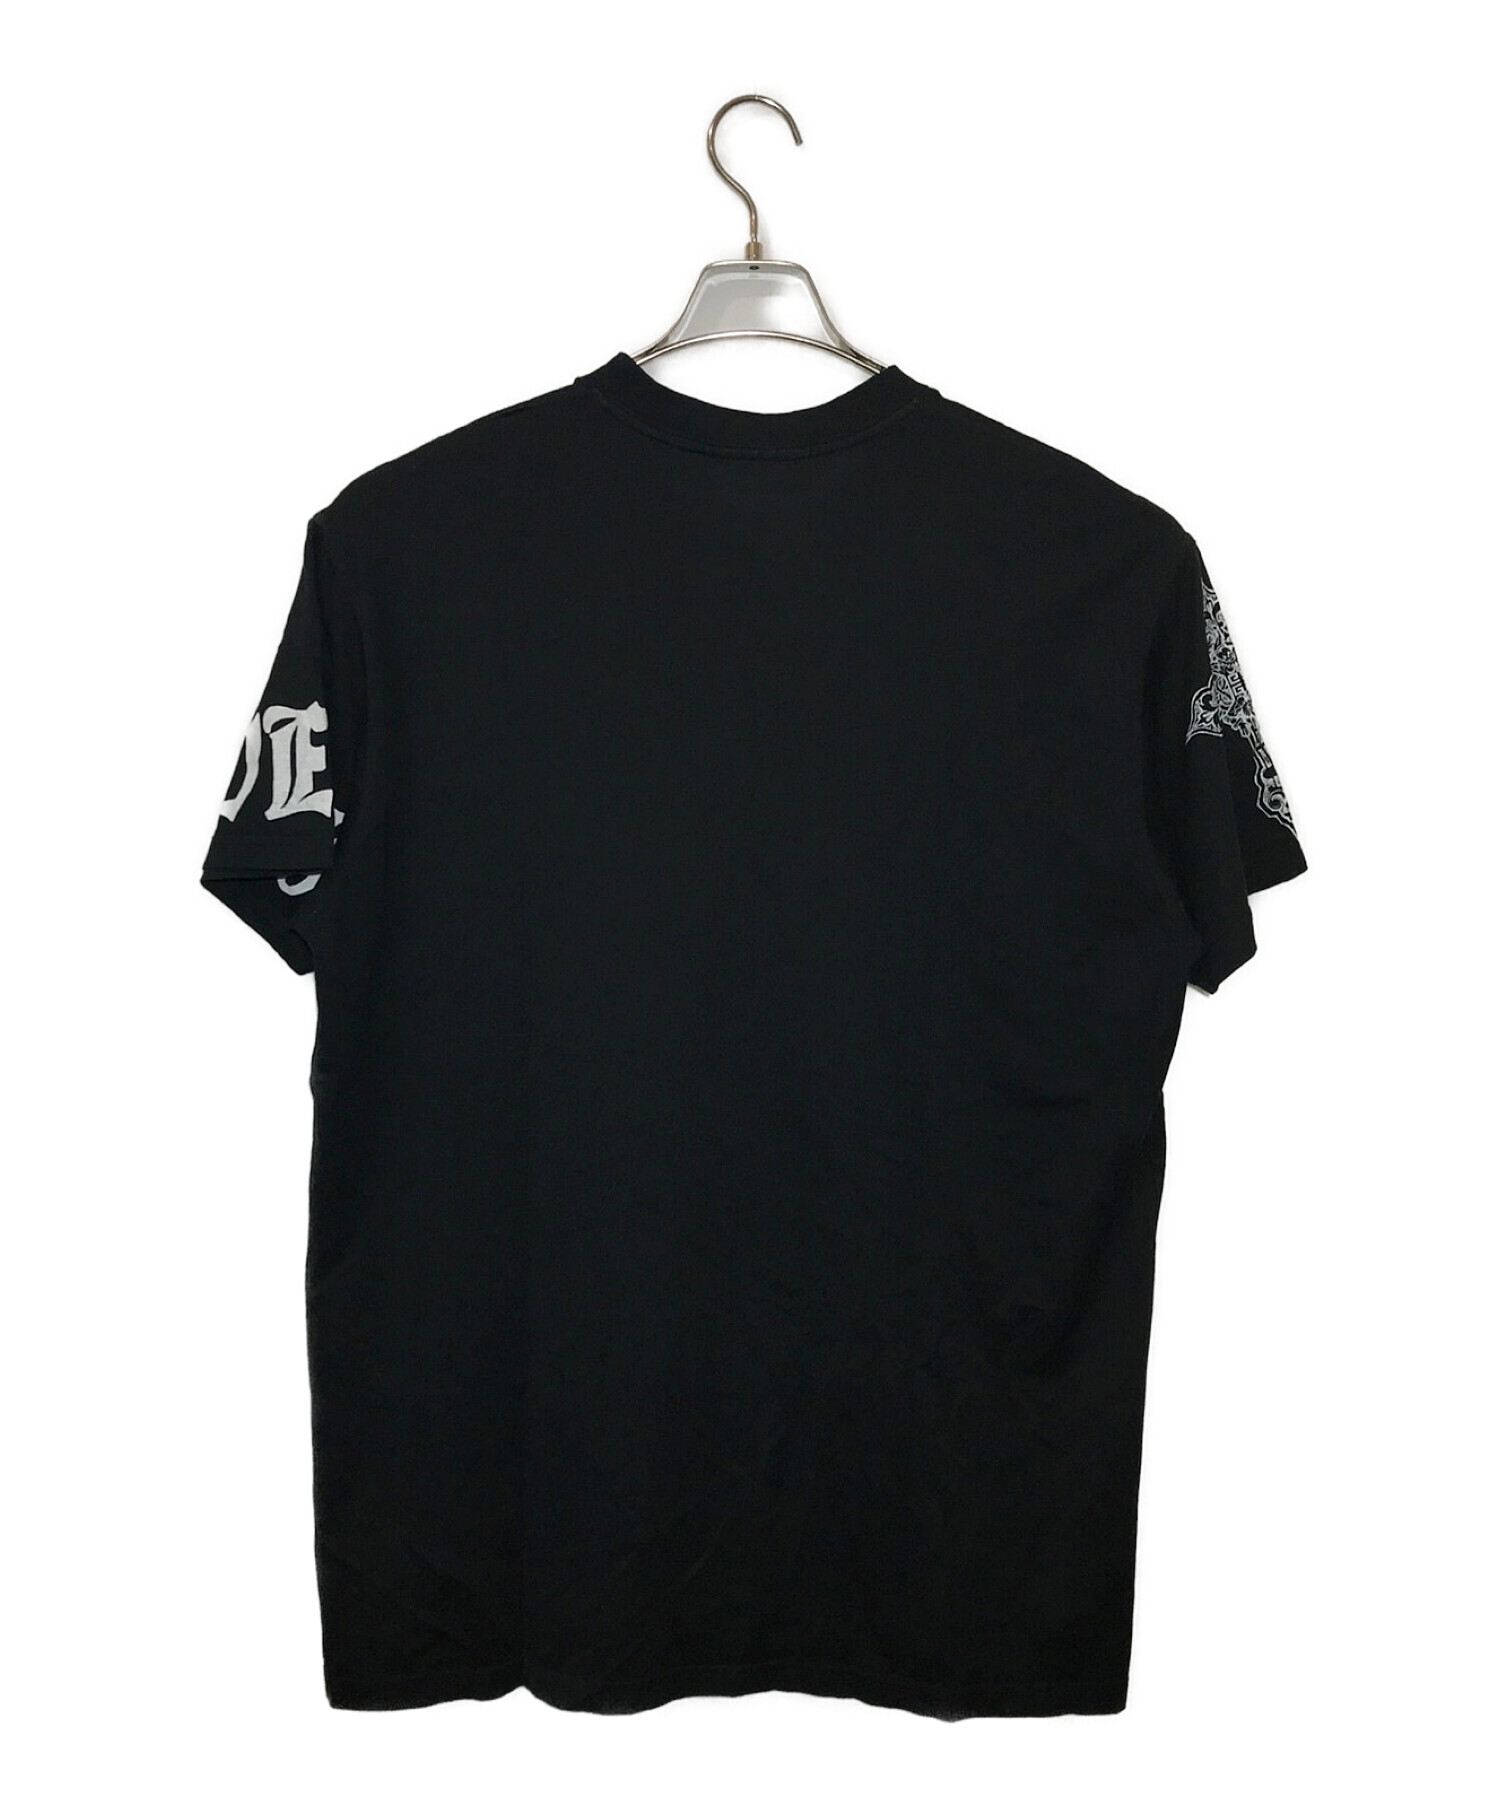 GIVENCHY (ジバンシィ) スカルタトゥーTシャツ ブラック サイズ:S